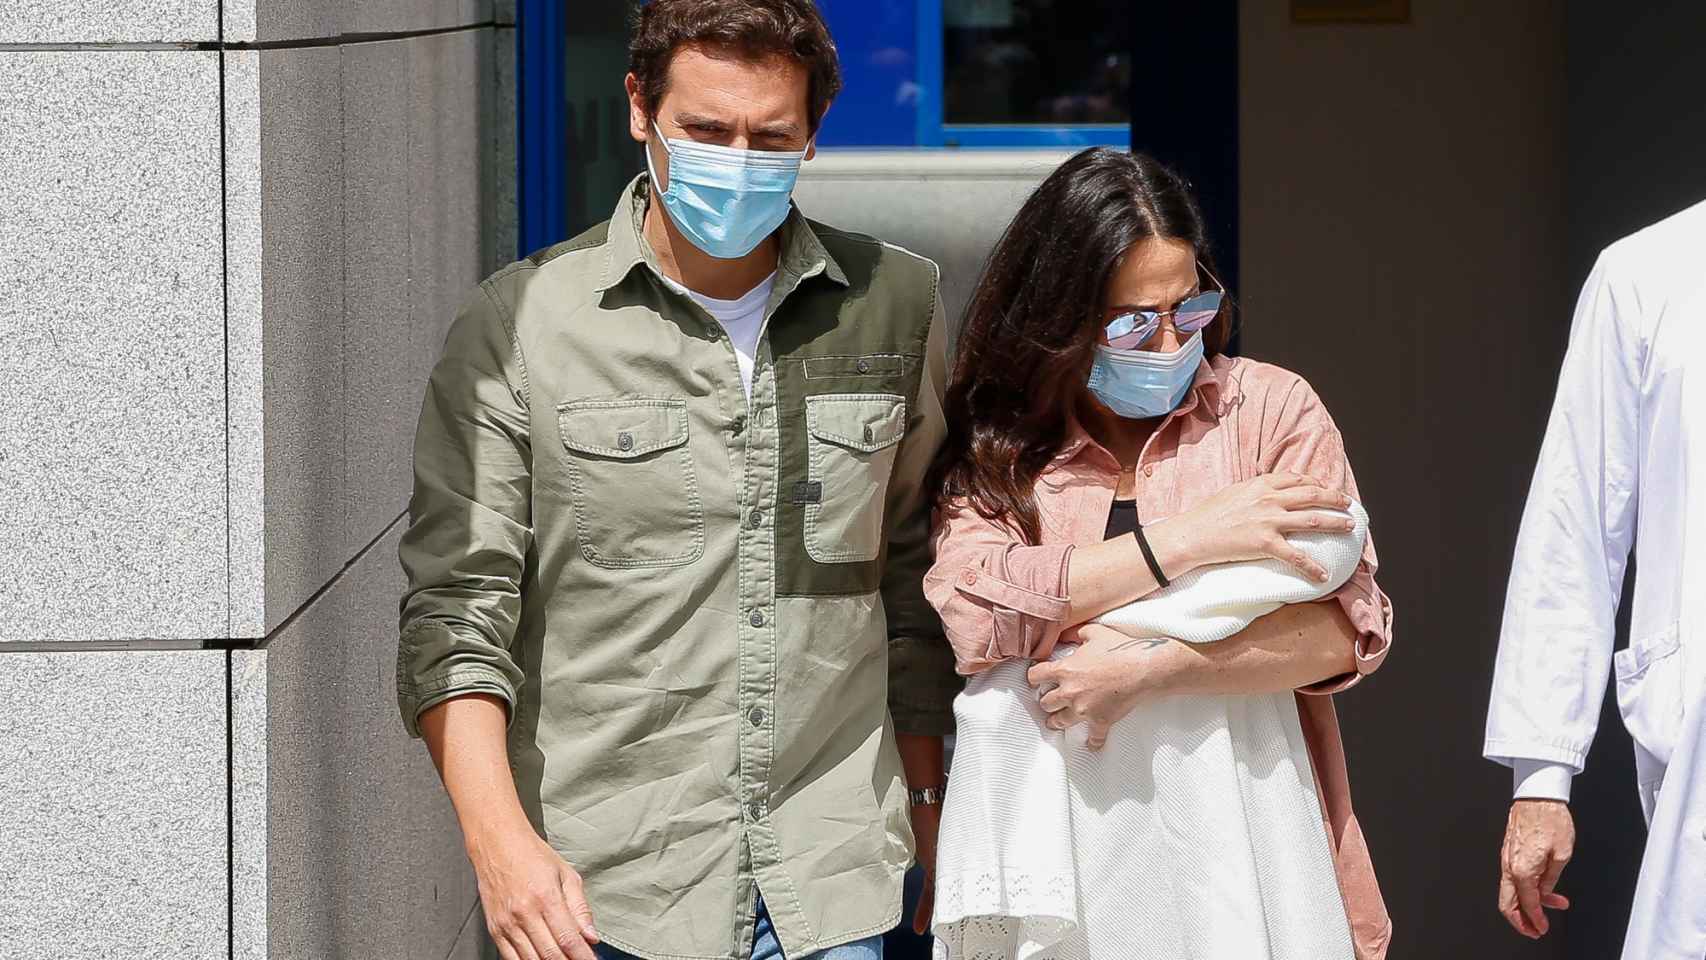 Malú y Albert Rivera saliendo del centro médico tras dar la bienvenida a su hija, Lucía, en junio de 2020.